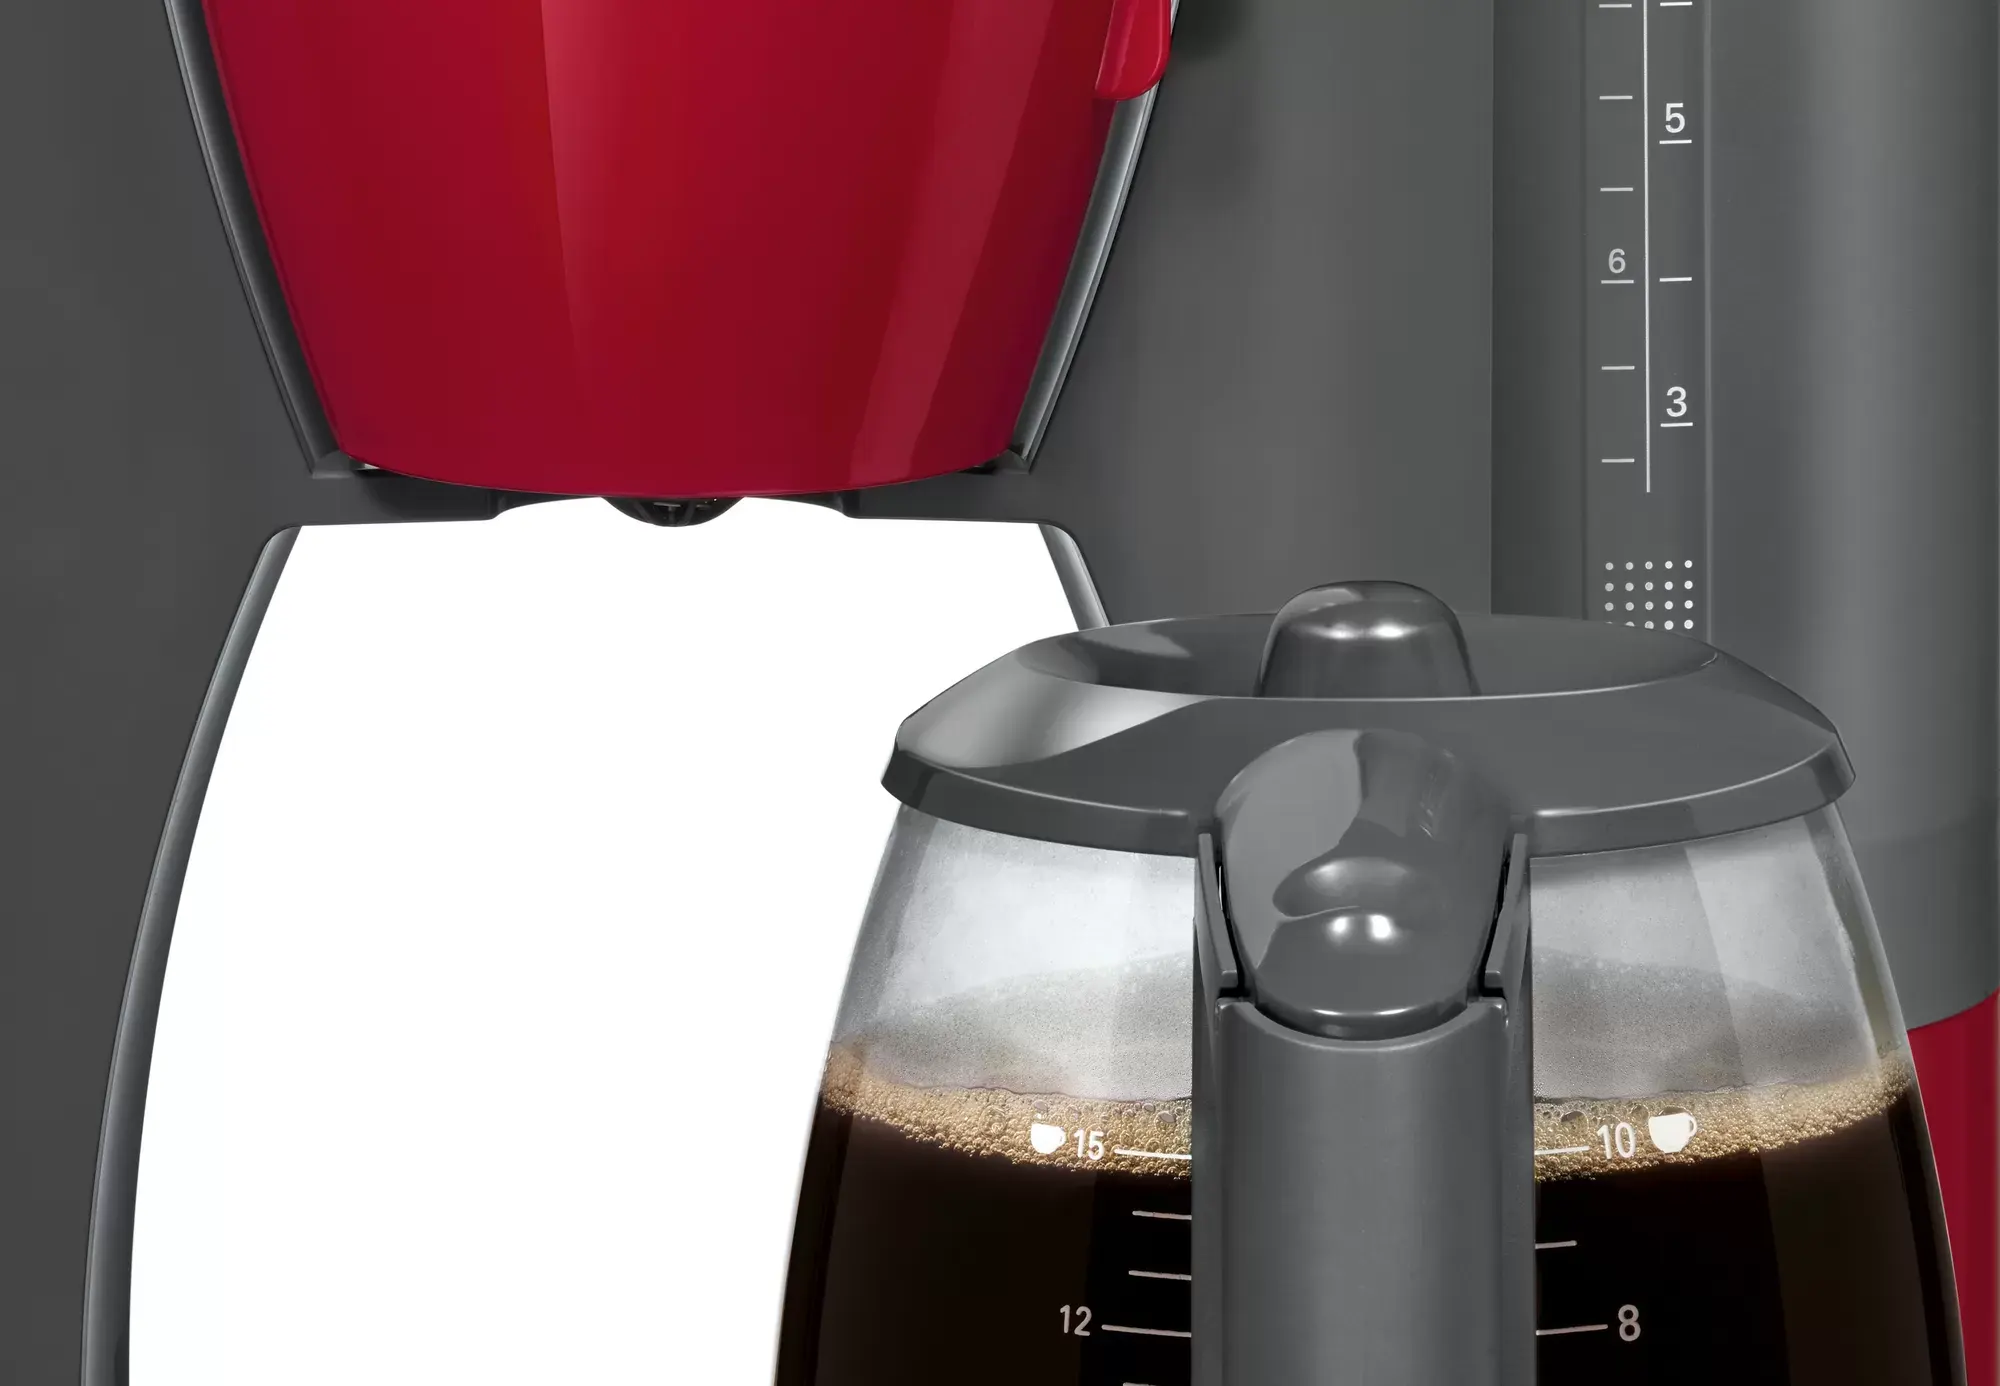 ماكينة تحضير قهوة امريكان بوش كومفورت لاين، 1200 وات ،أحمر ،TKA6A044